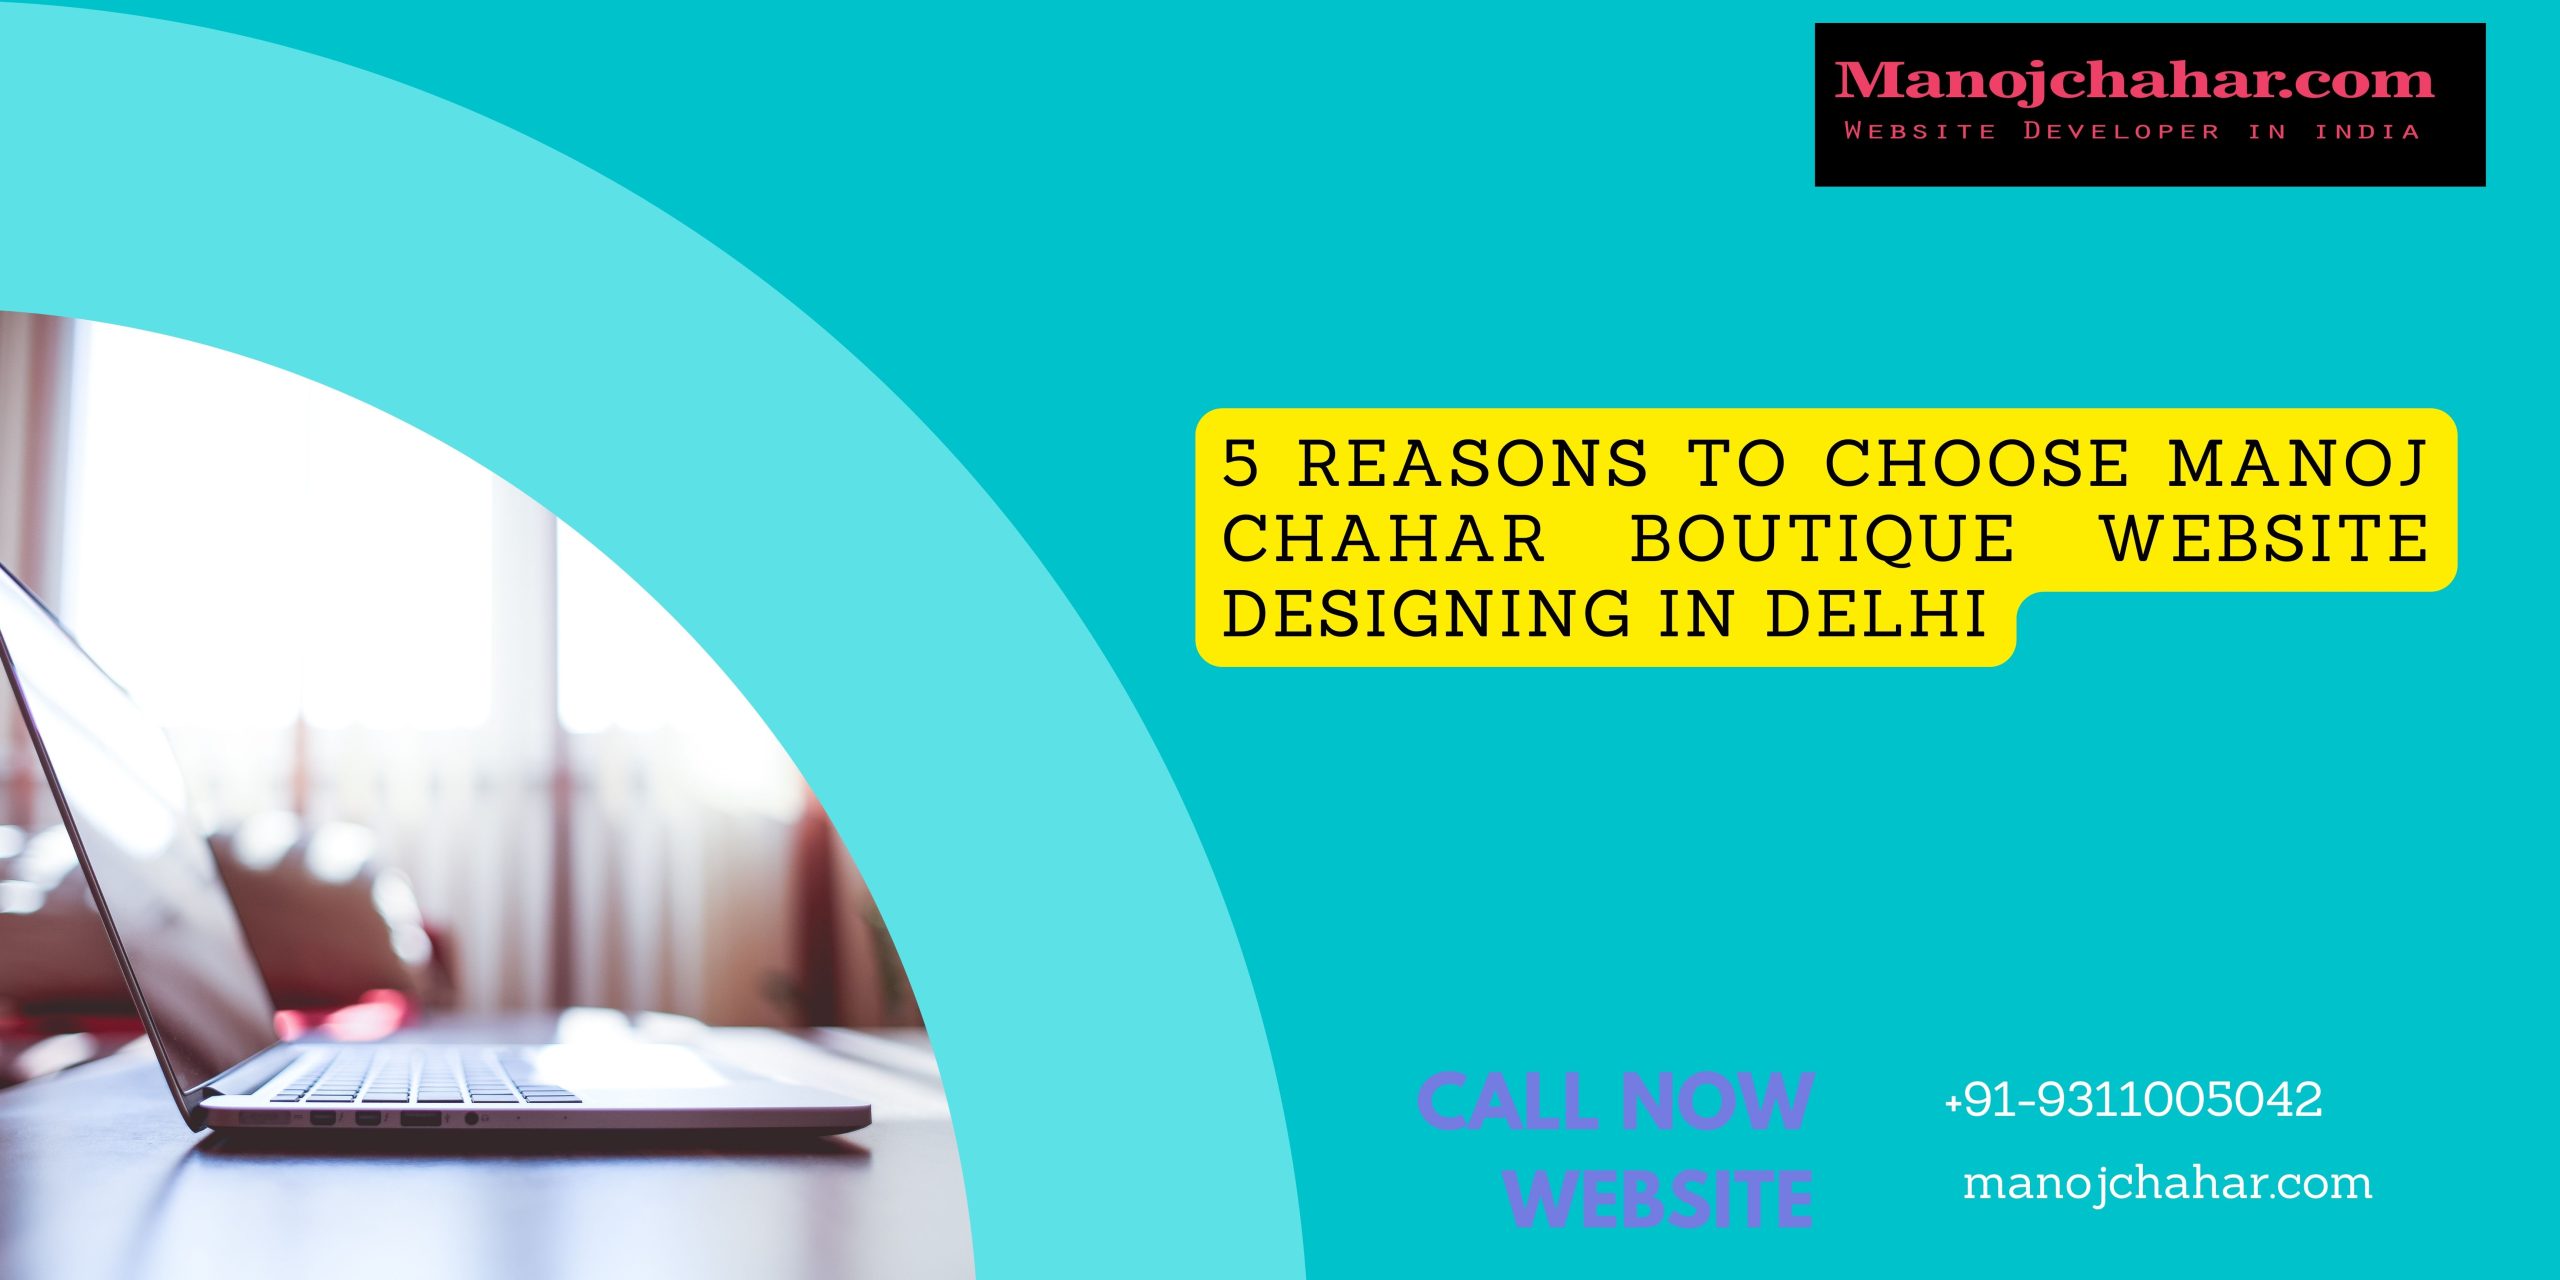 5 Reasons To Choose Manoj Chahar Boutique Website Designing In Delhi